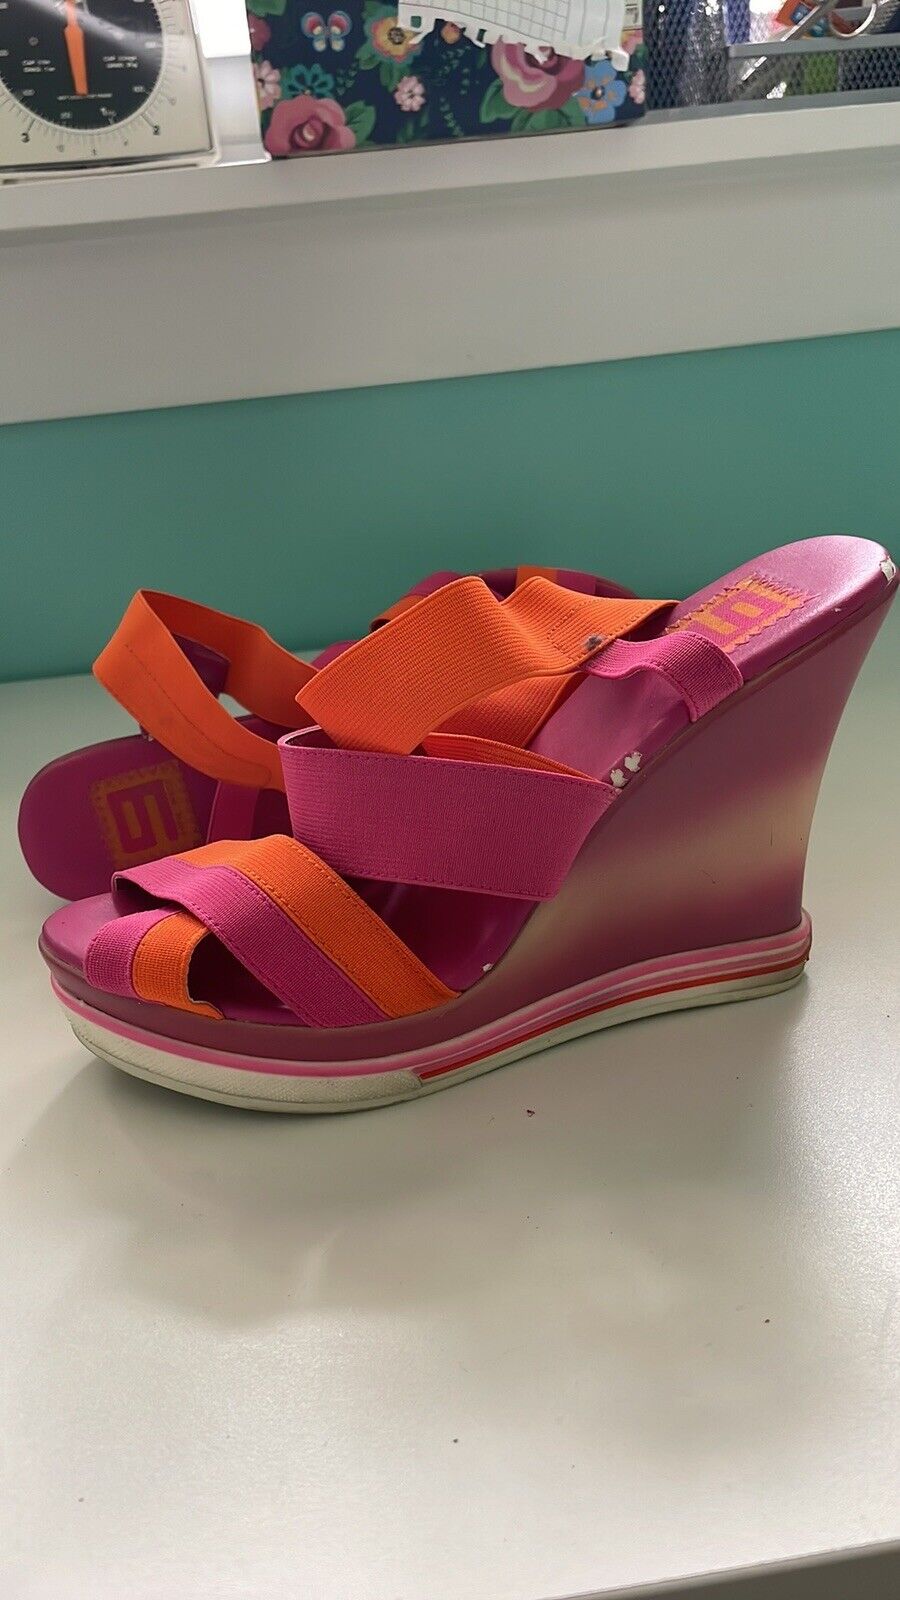 Nine West Strappy Sandals Wedges 8.5 Pink Orange - image 9